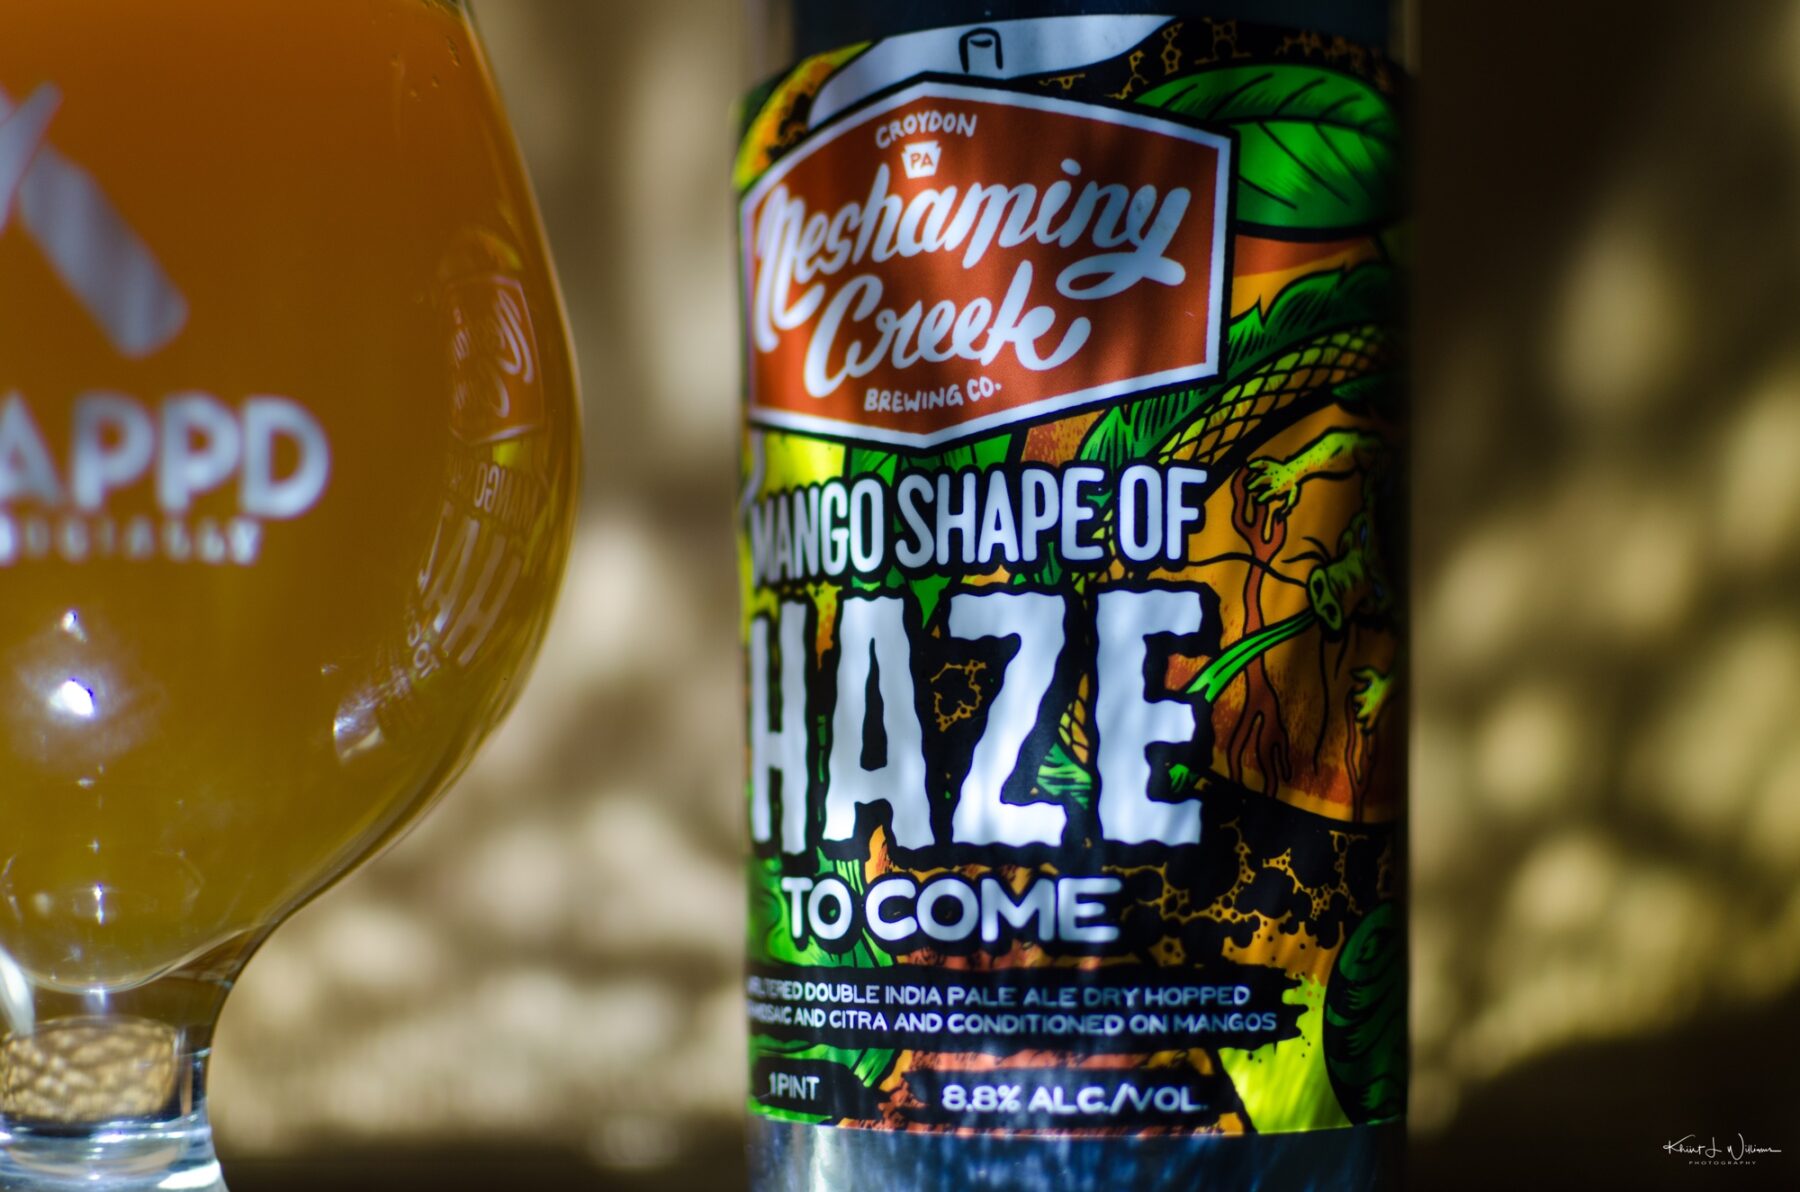 Neshaminy Creek Brewing Company's Mango Shape of Haze To Come Double IPA